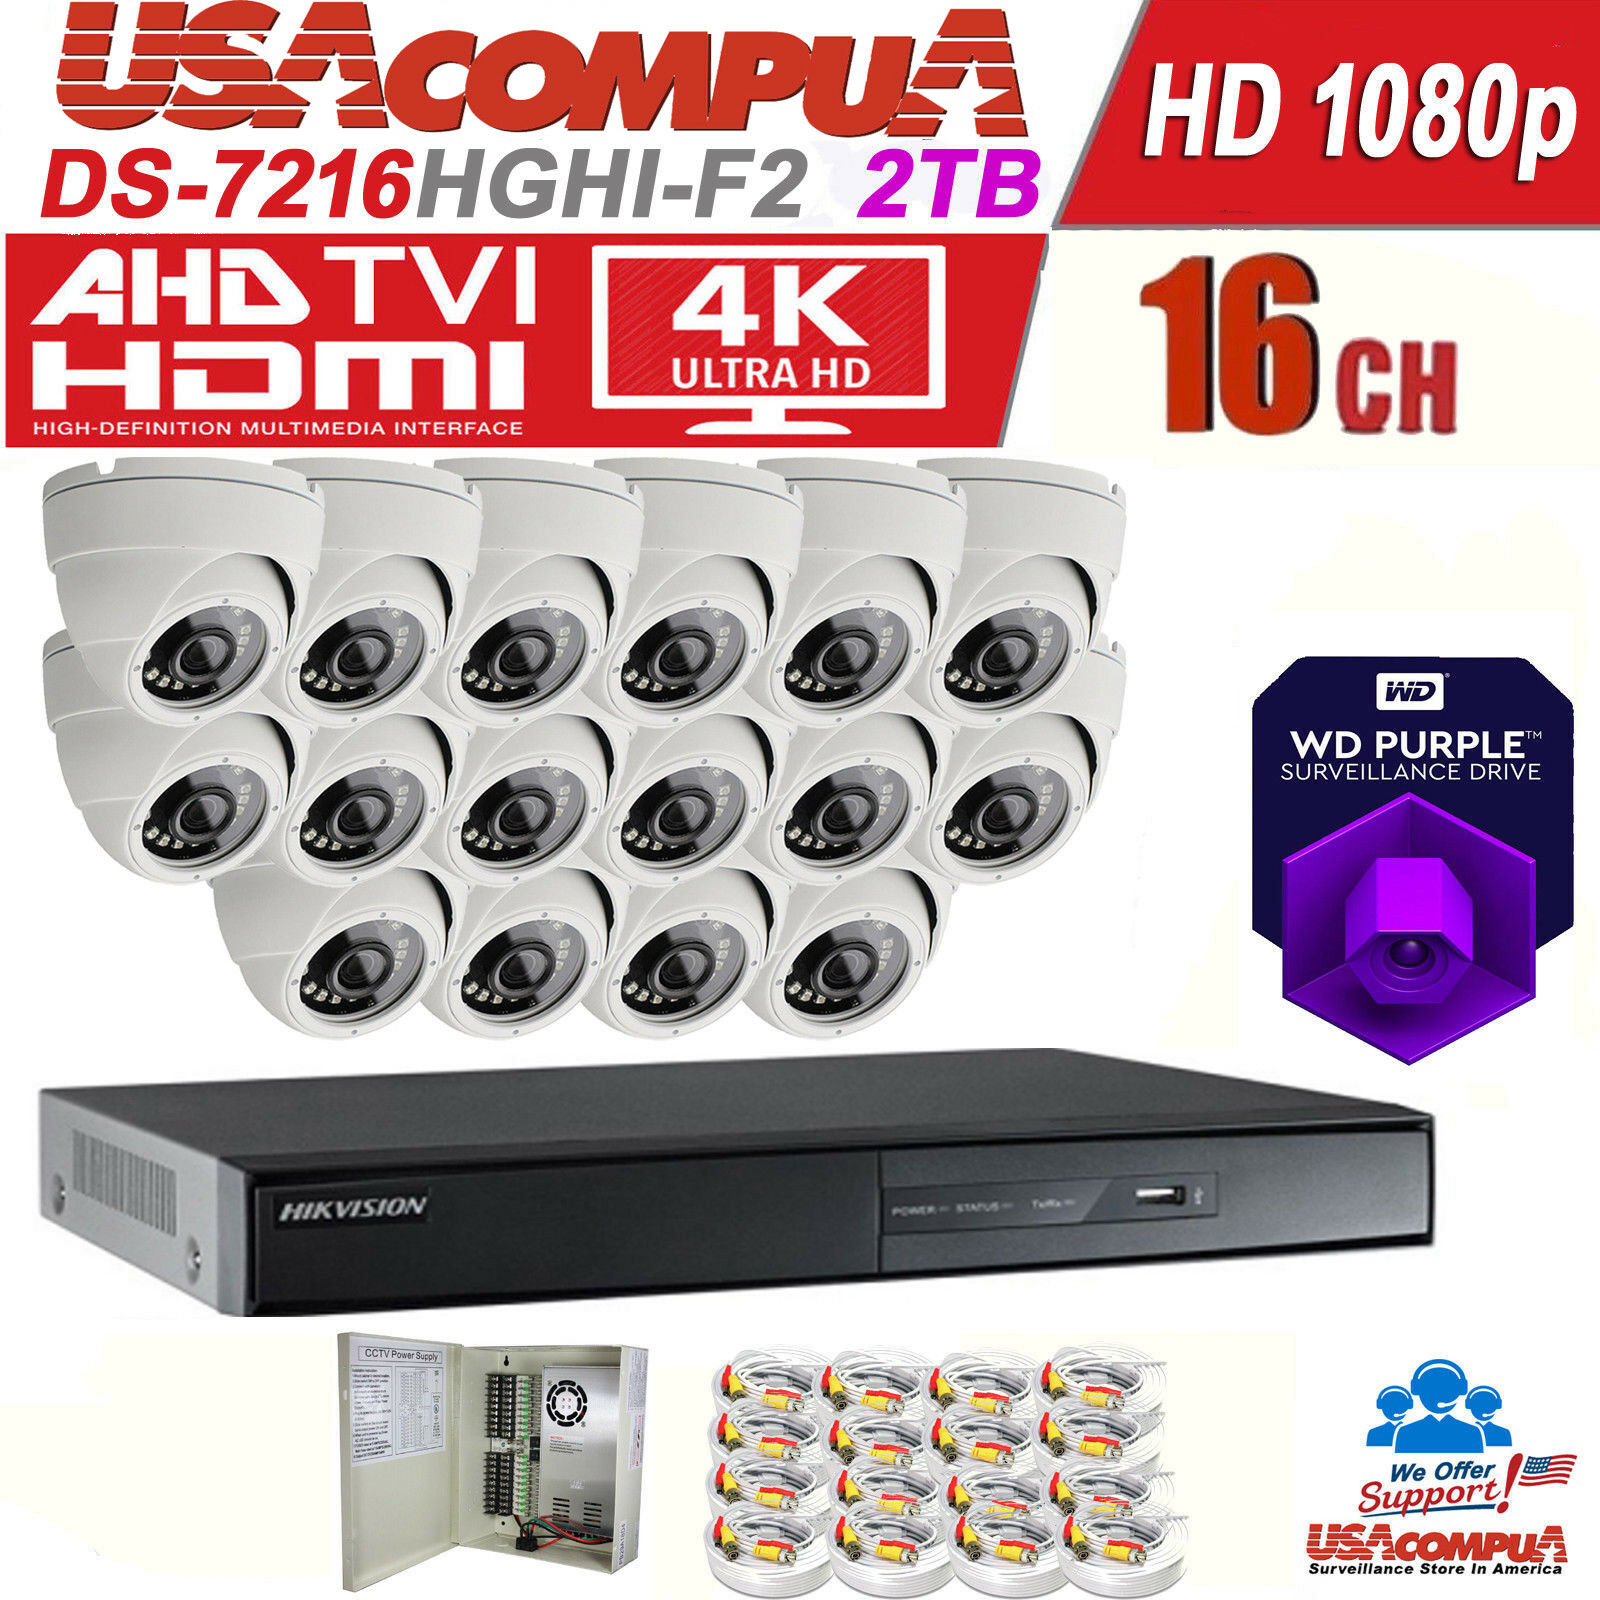 Hikvision Kit 16 Ch 16 Cameras Tvi Hd 1080p Dvr 2tb Kit Ds 7216hghi F2 2sata Usacompua Corp